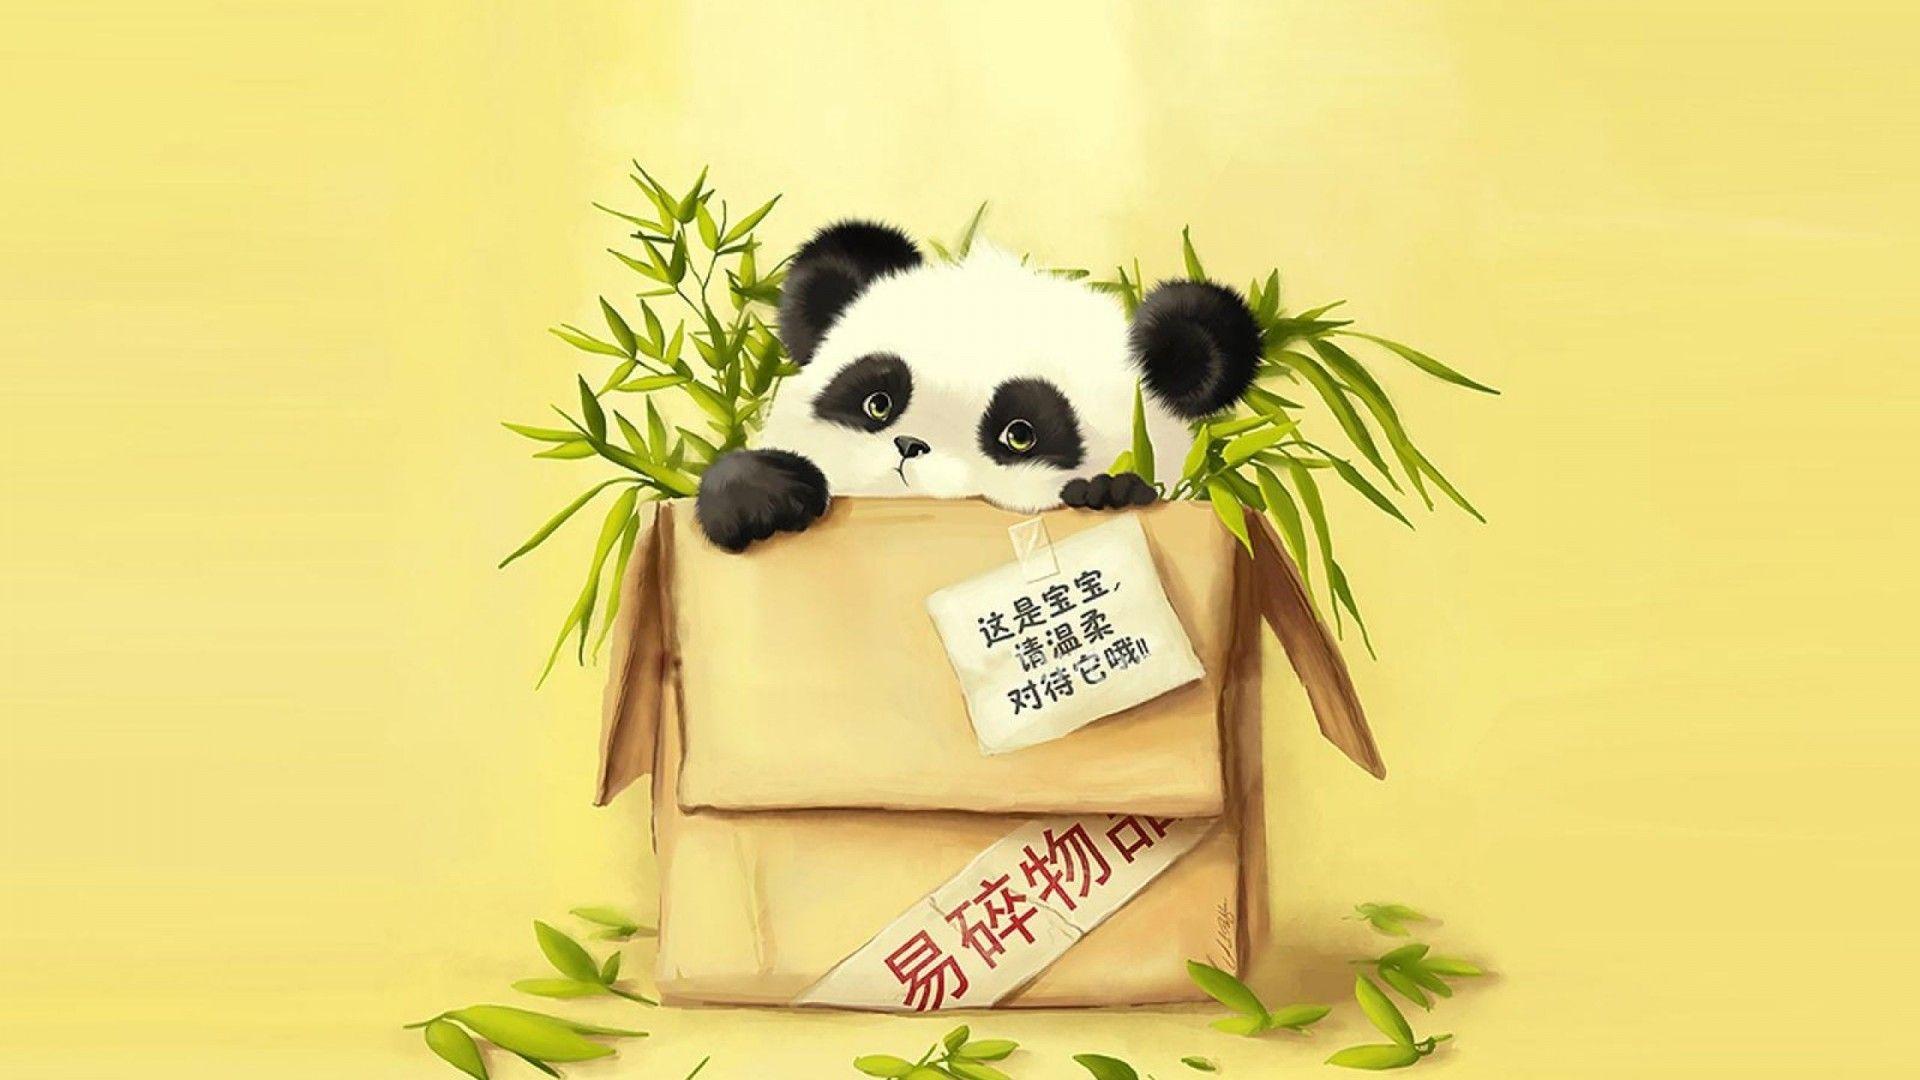 Cute Panda HD Wallpaper Tumblr